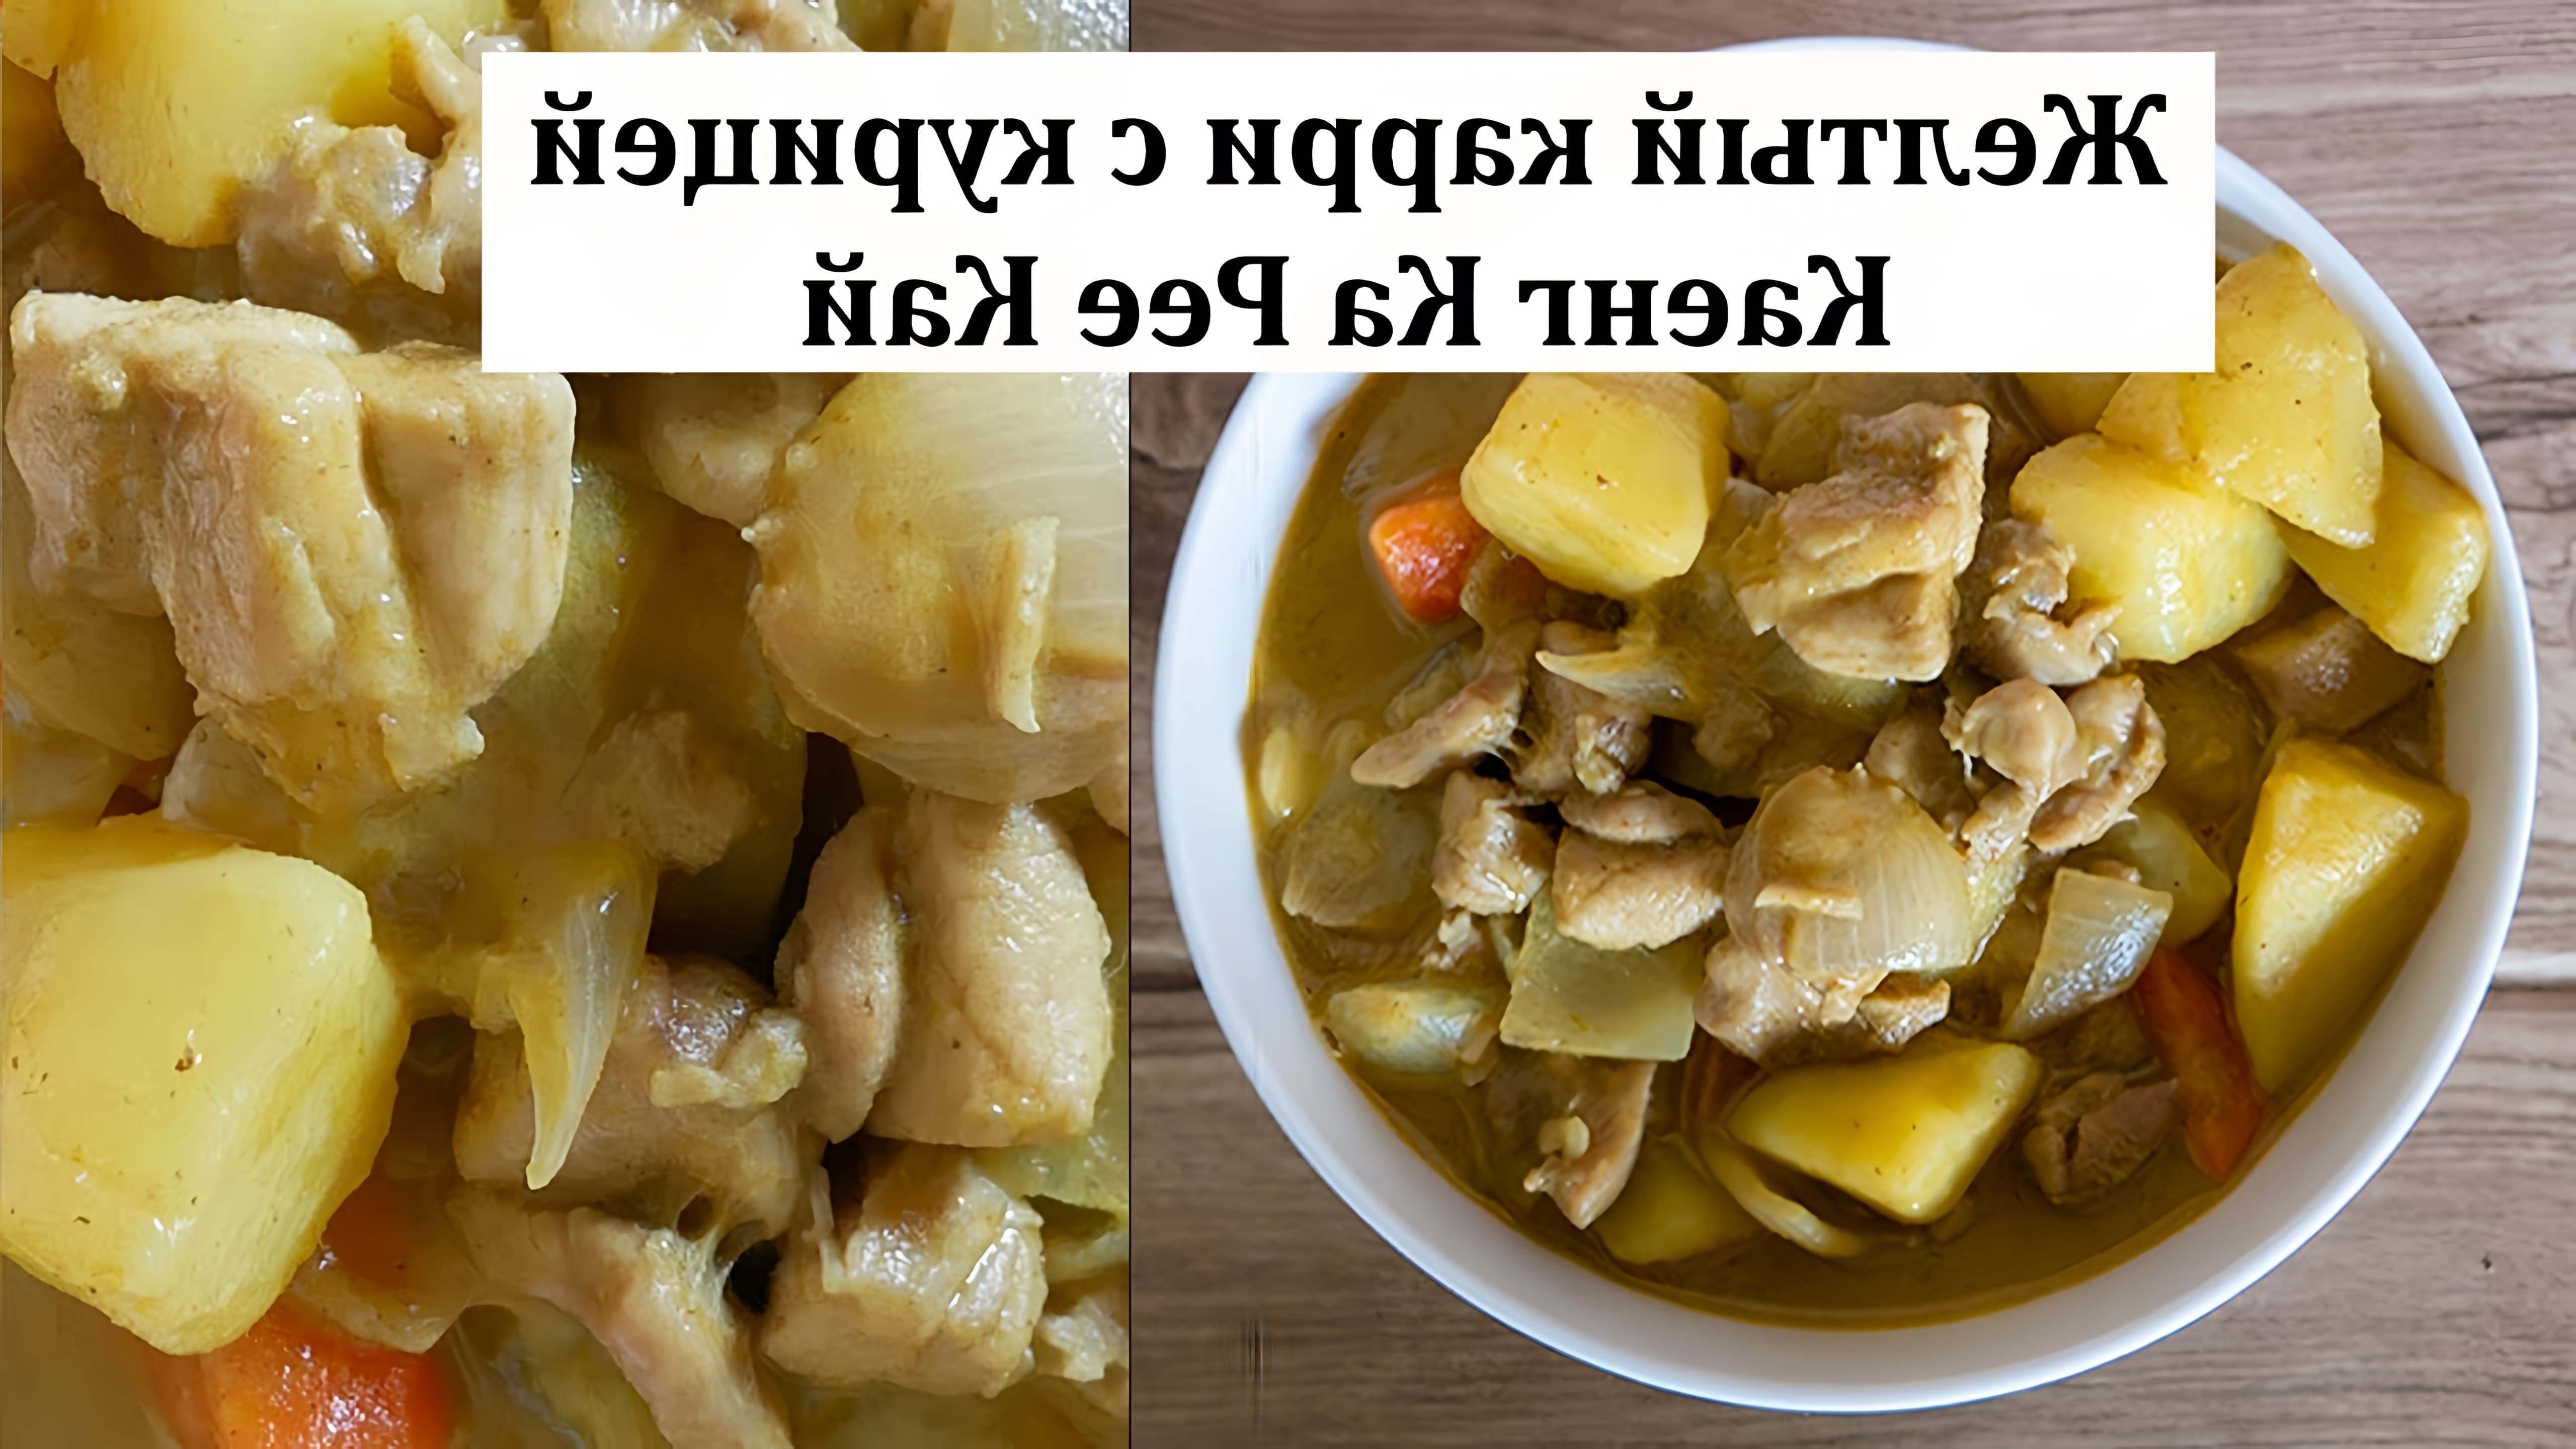 В этом видео демонстрируется процесс приготовления желтого карри с курицей по тайскому рецепту